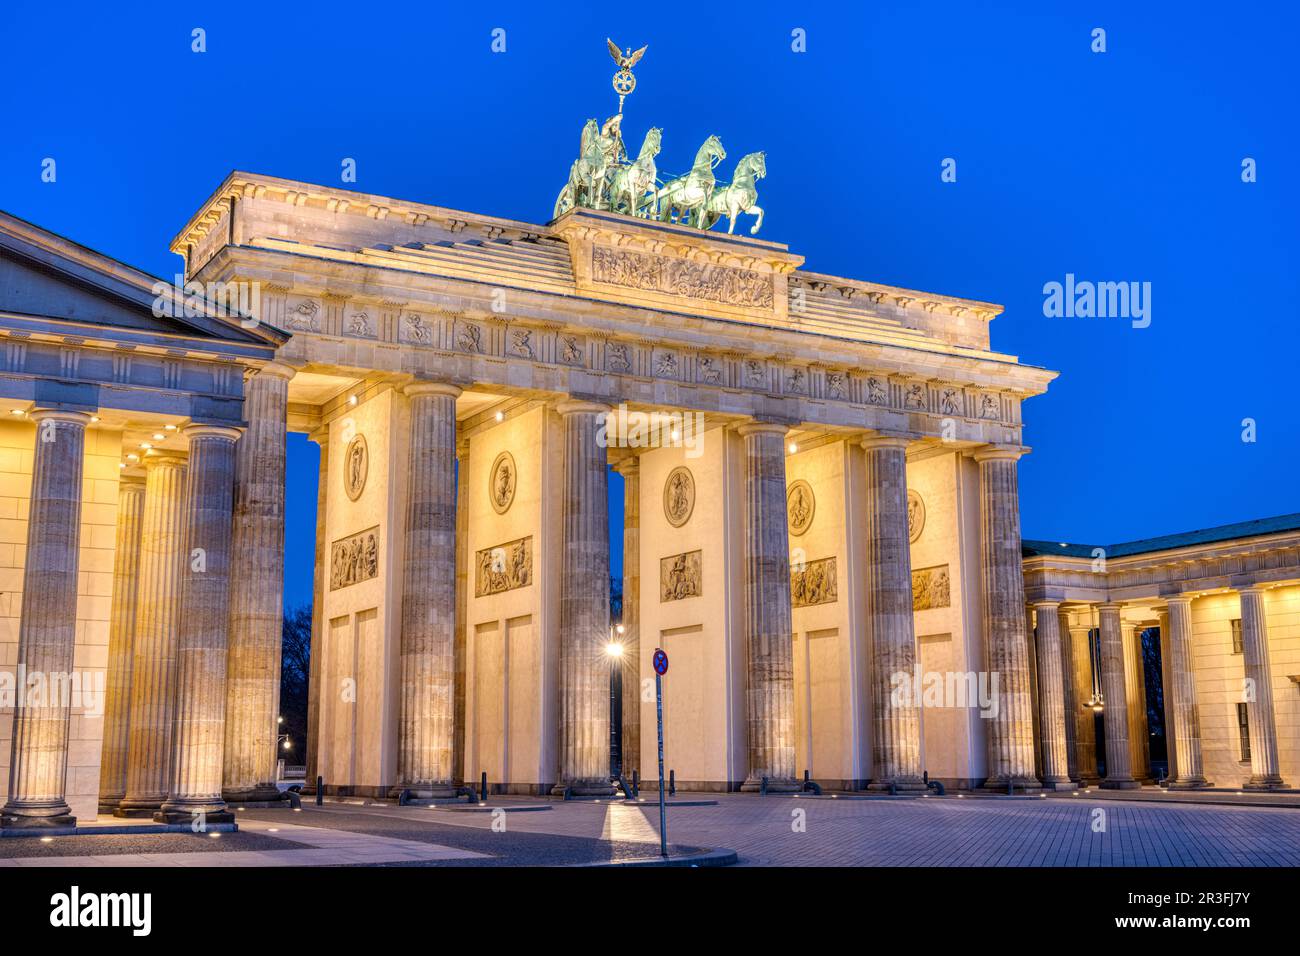 La famosa porta di Brandeburgo illuminata a Berlino durante l'ora blu Foto Stock